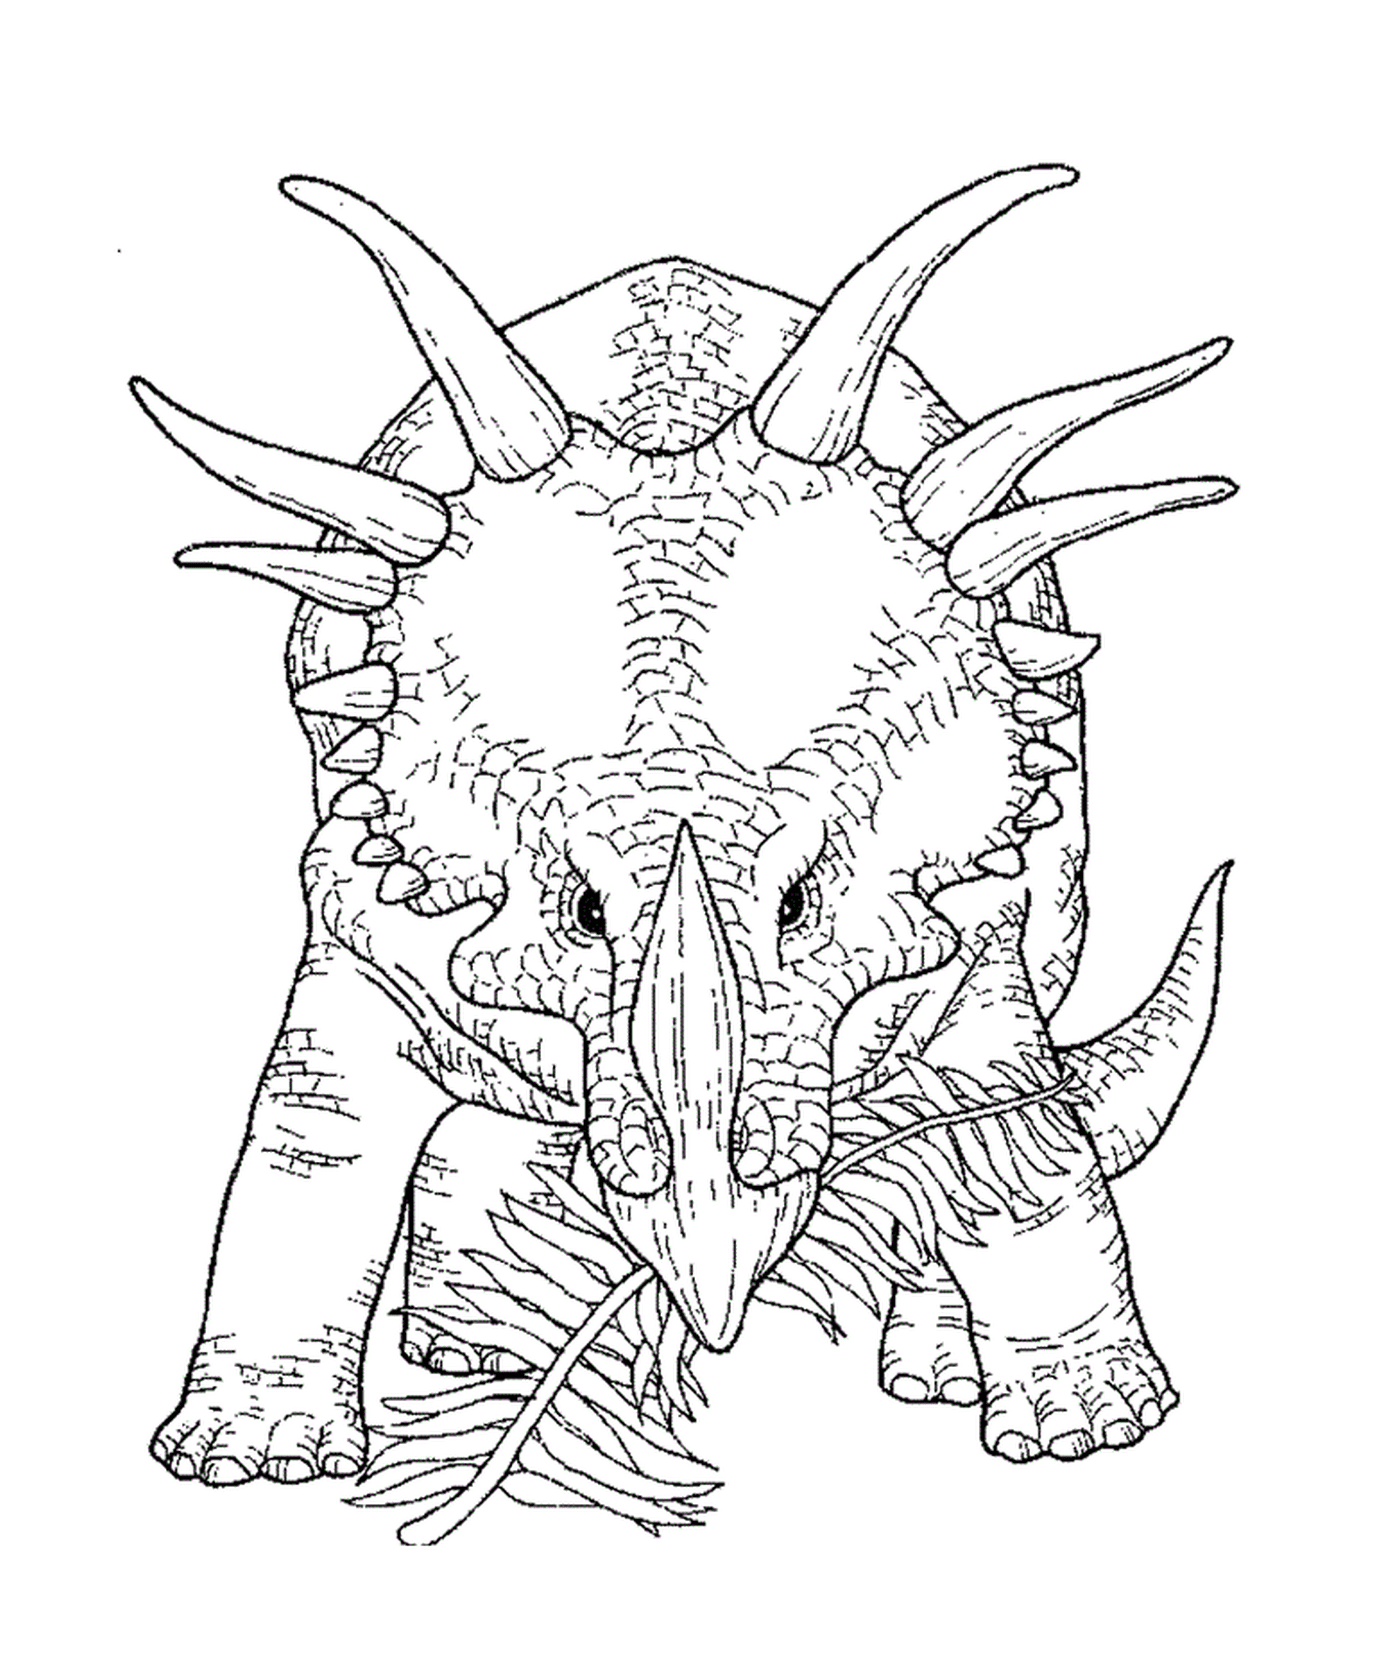  Ein erwachsener Triceratops auf dem Display 